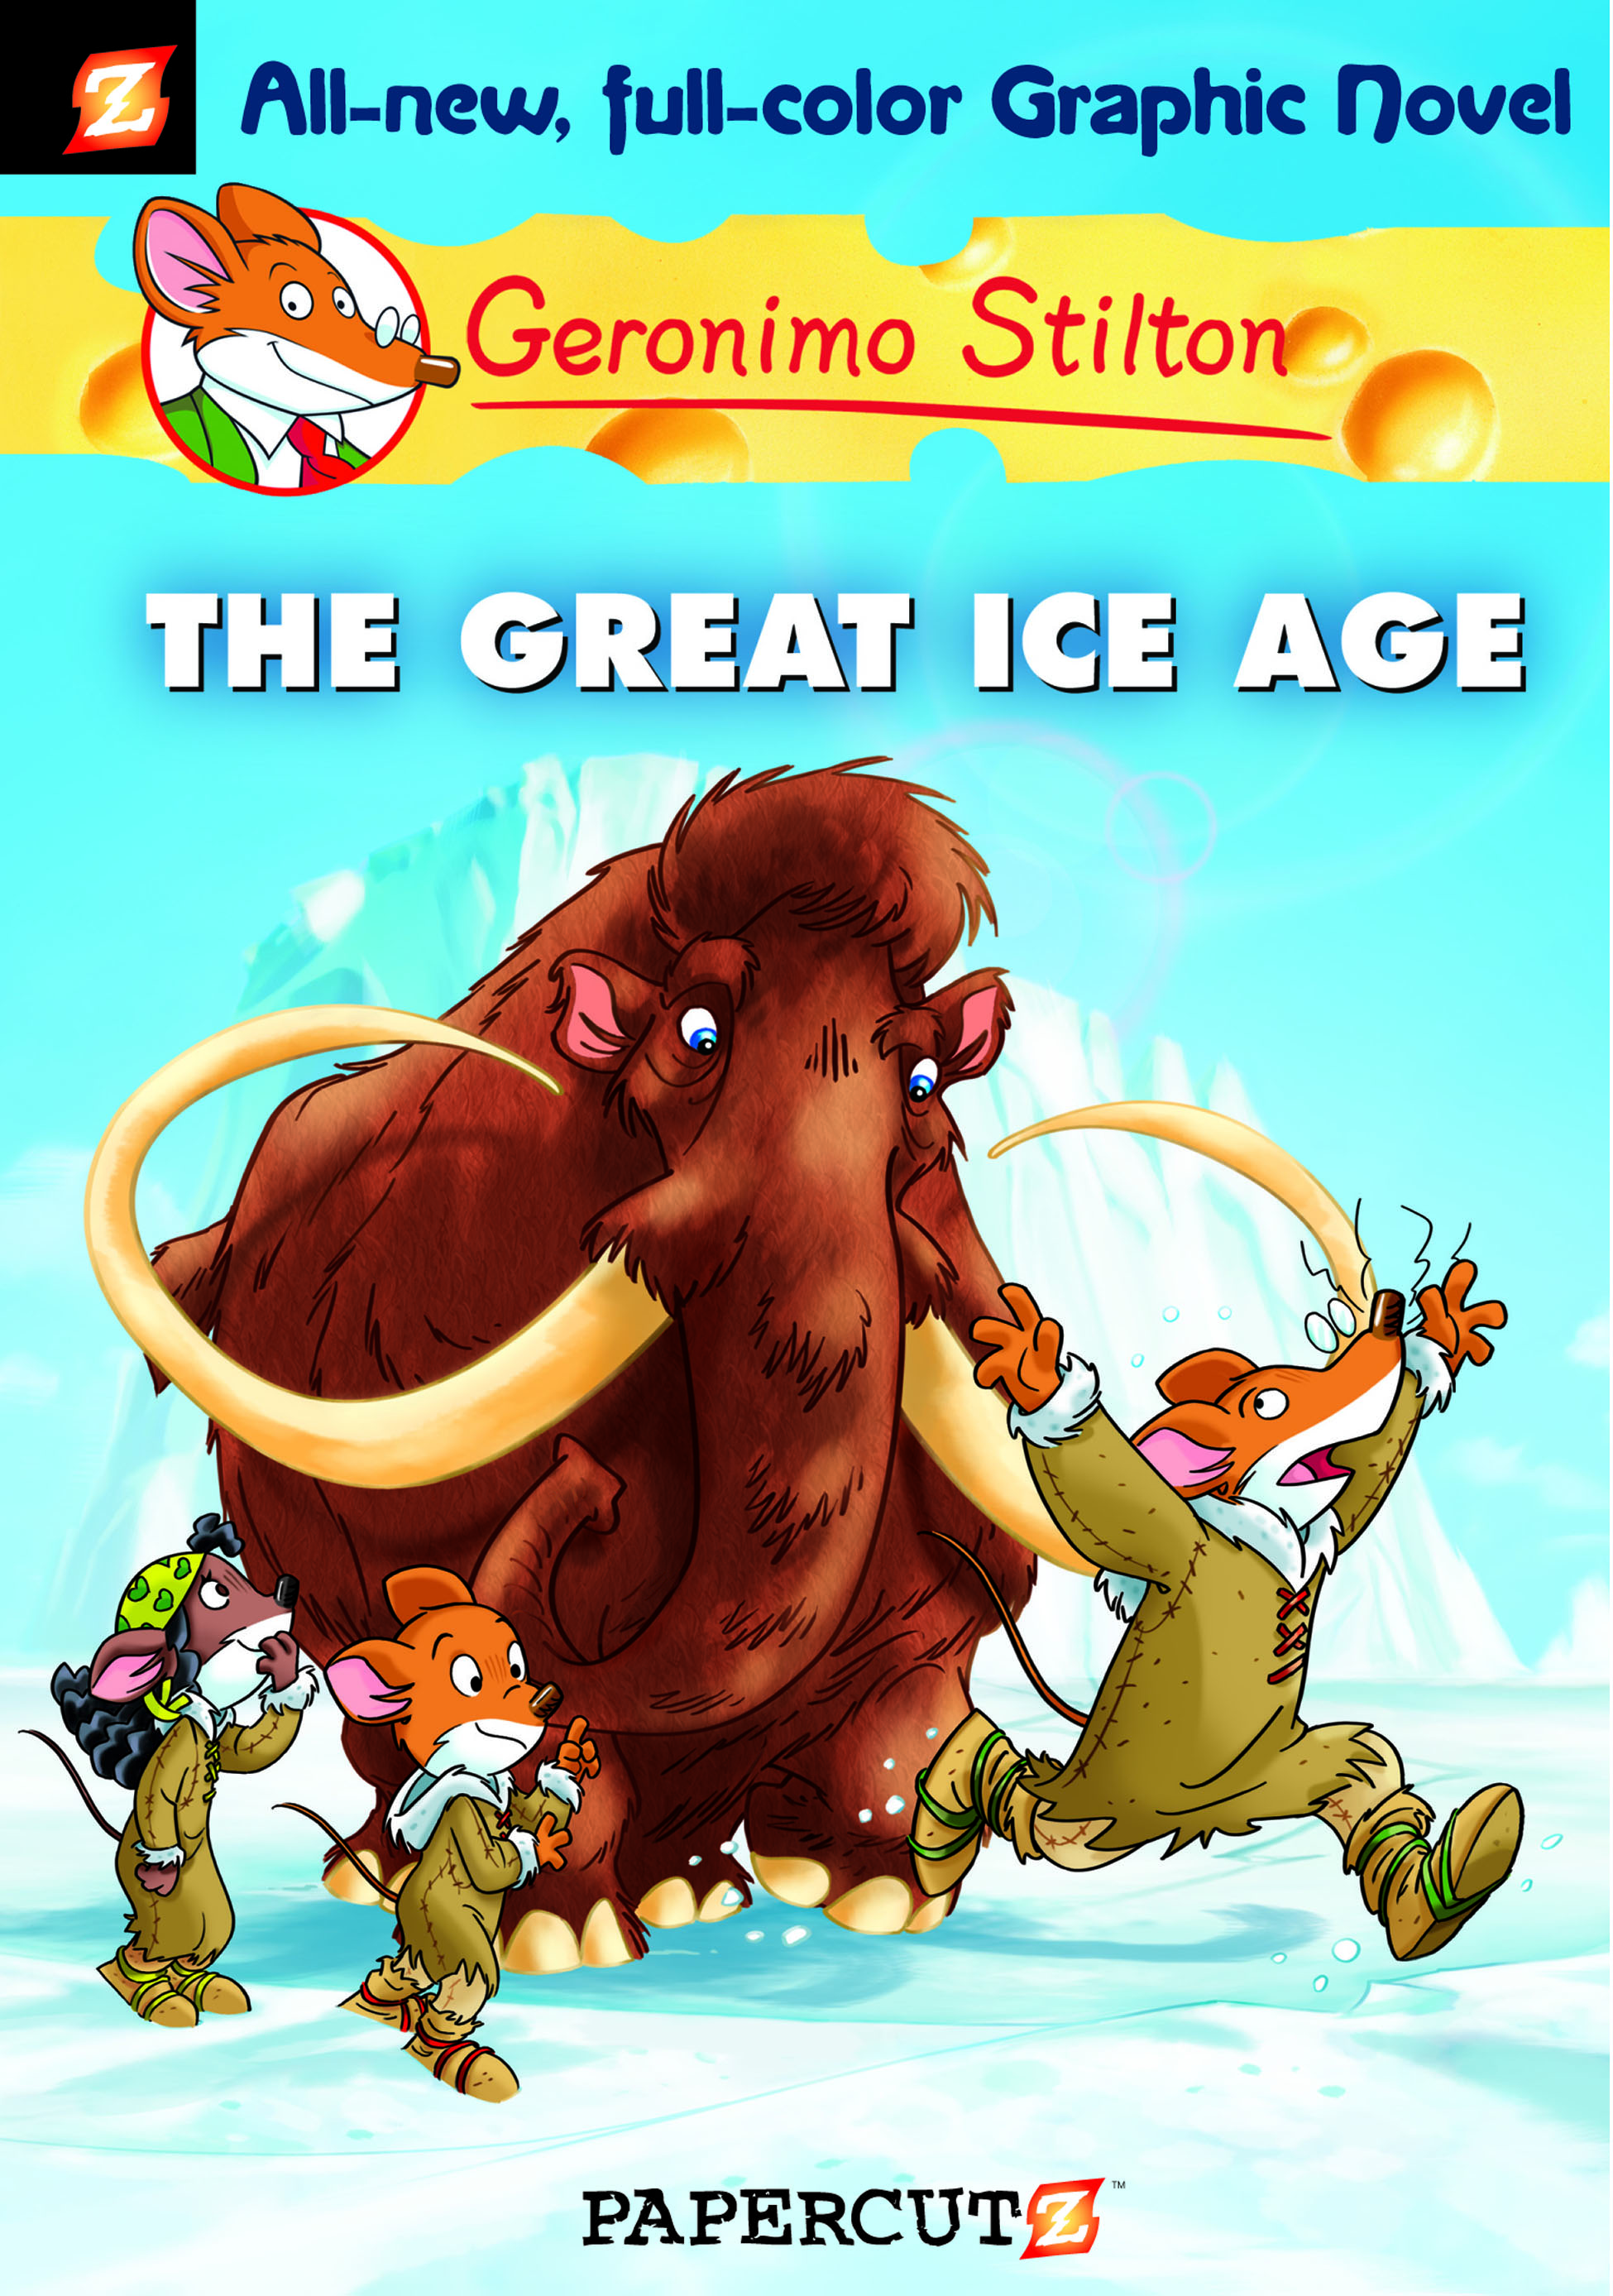 Geronimo Stilton Comics: Geronimo Stilton #5 